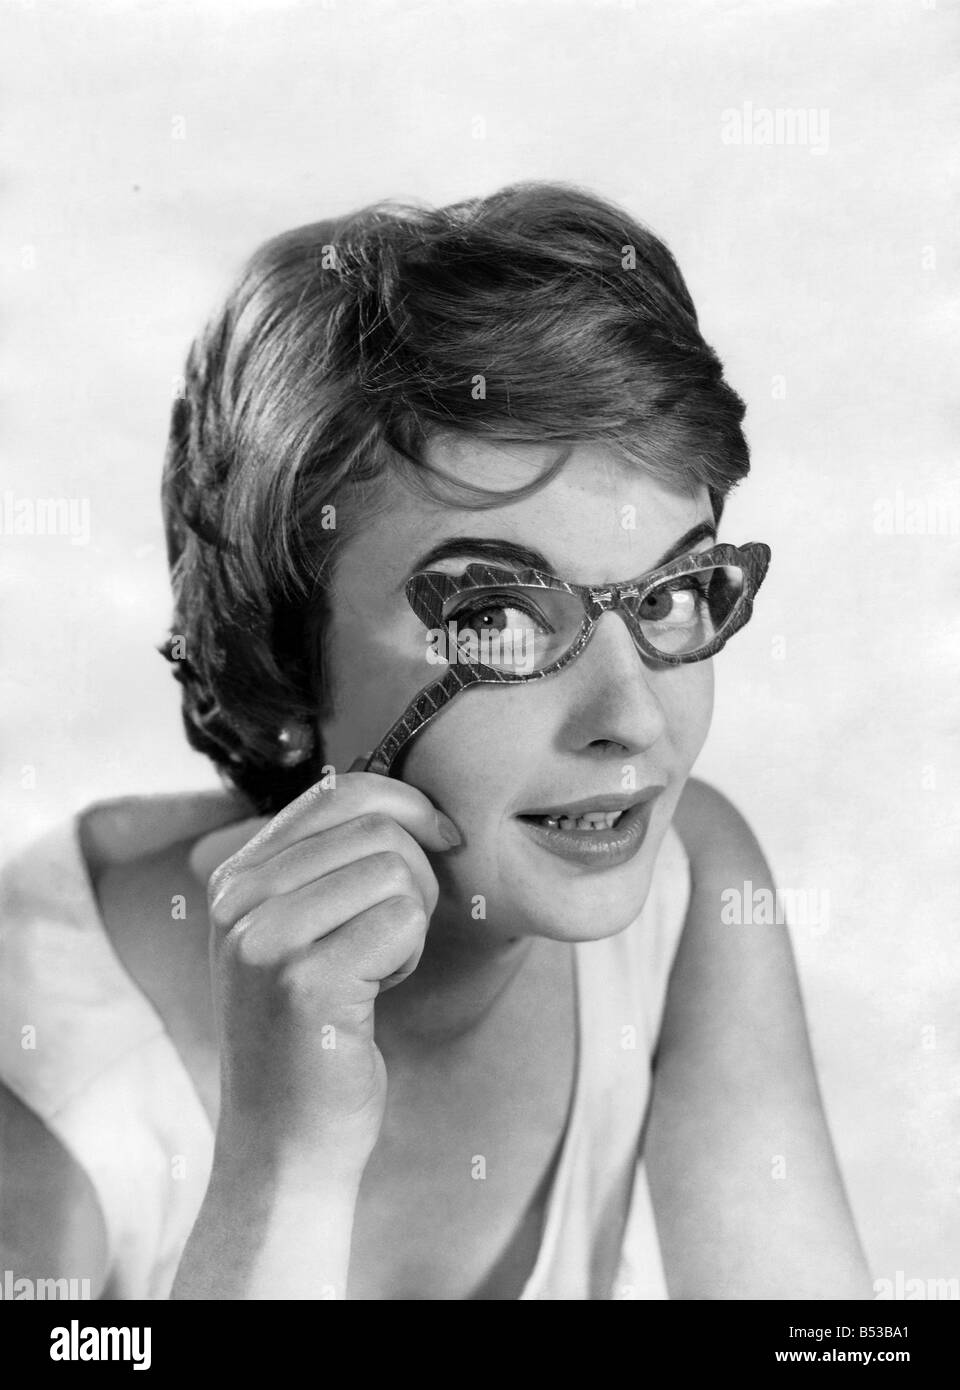 Lunettes à la mode. Model porte des lunettes.&# 13 ;&# 10;Décembre 1957 P018651 Banque D'Images